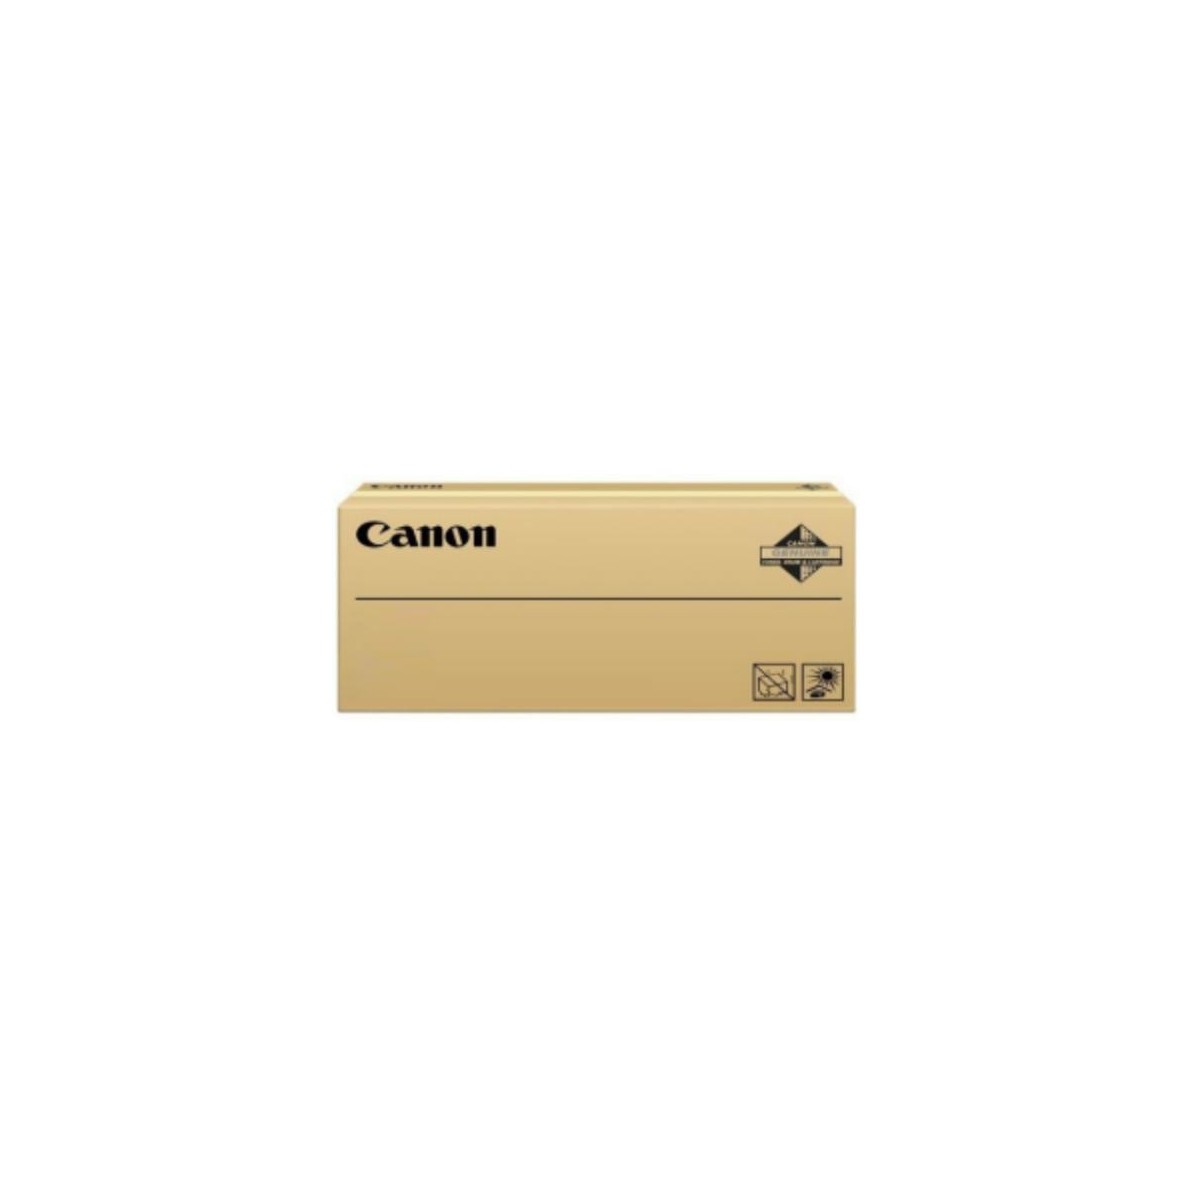 Canon Cartridge 069 H M